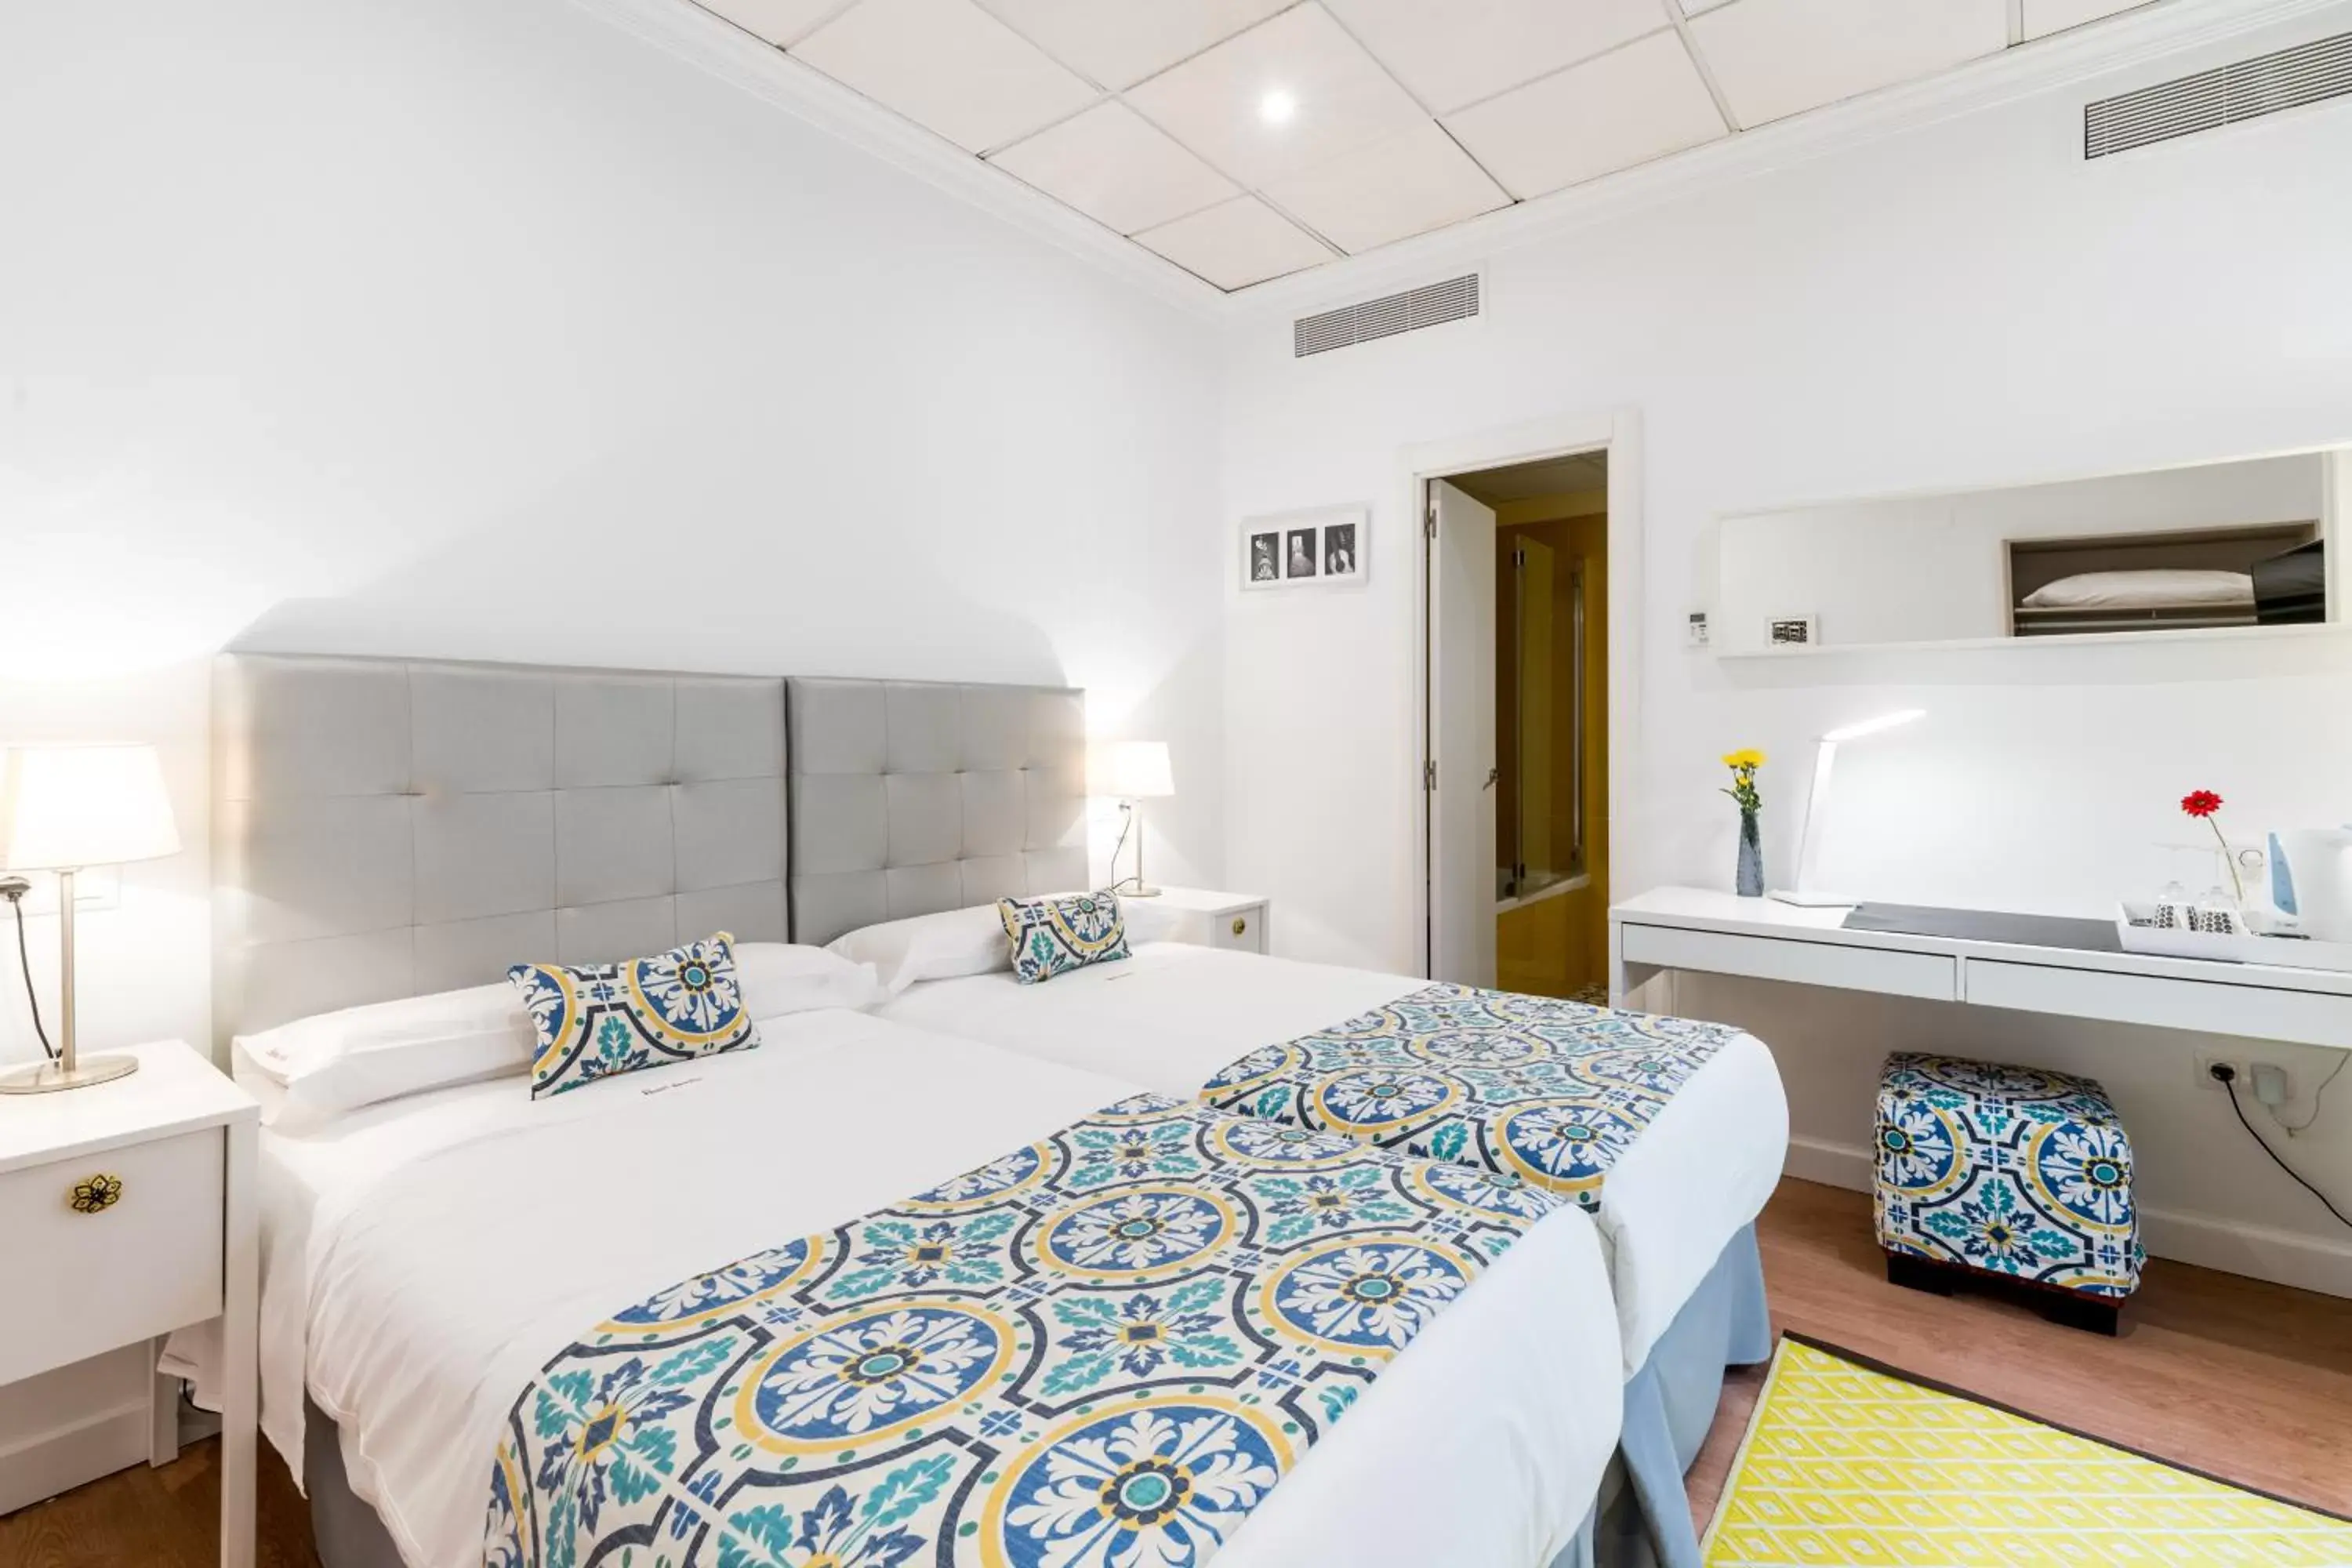 Bed in Hotel Sevilla